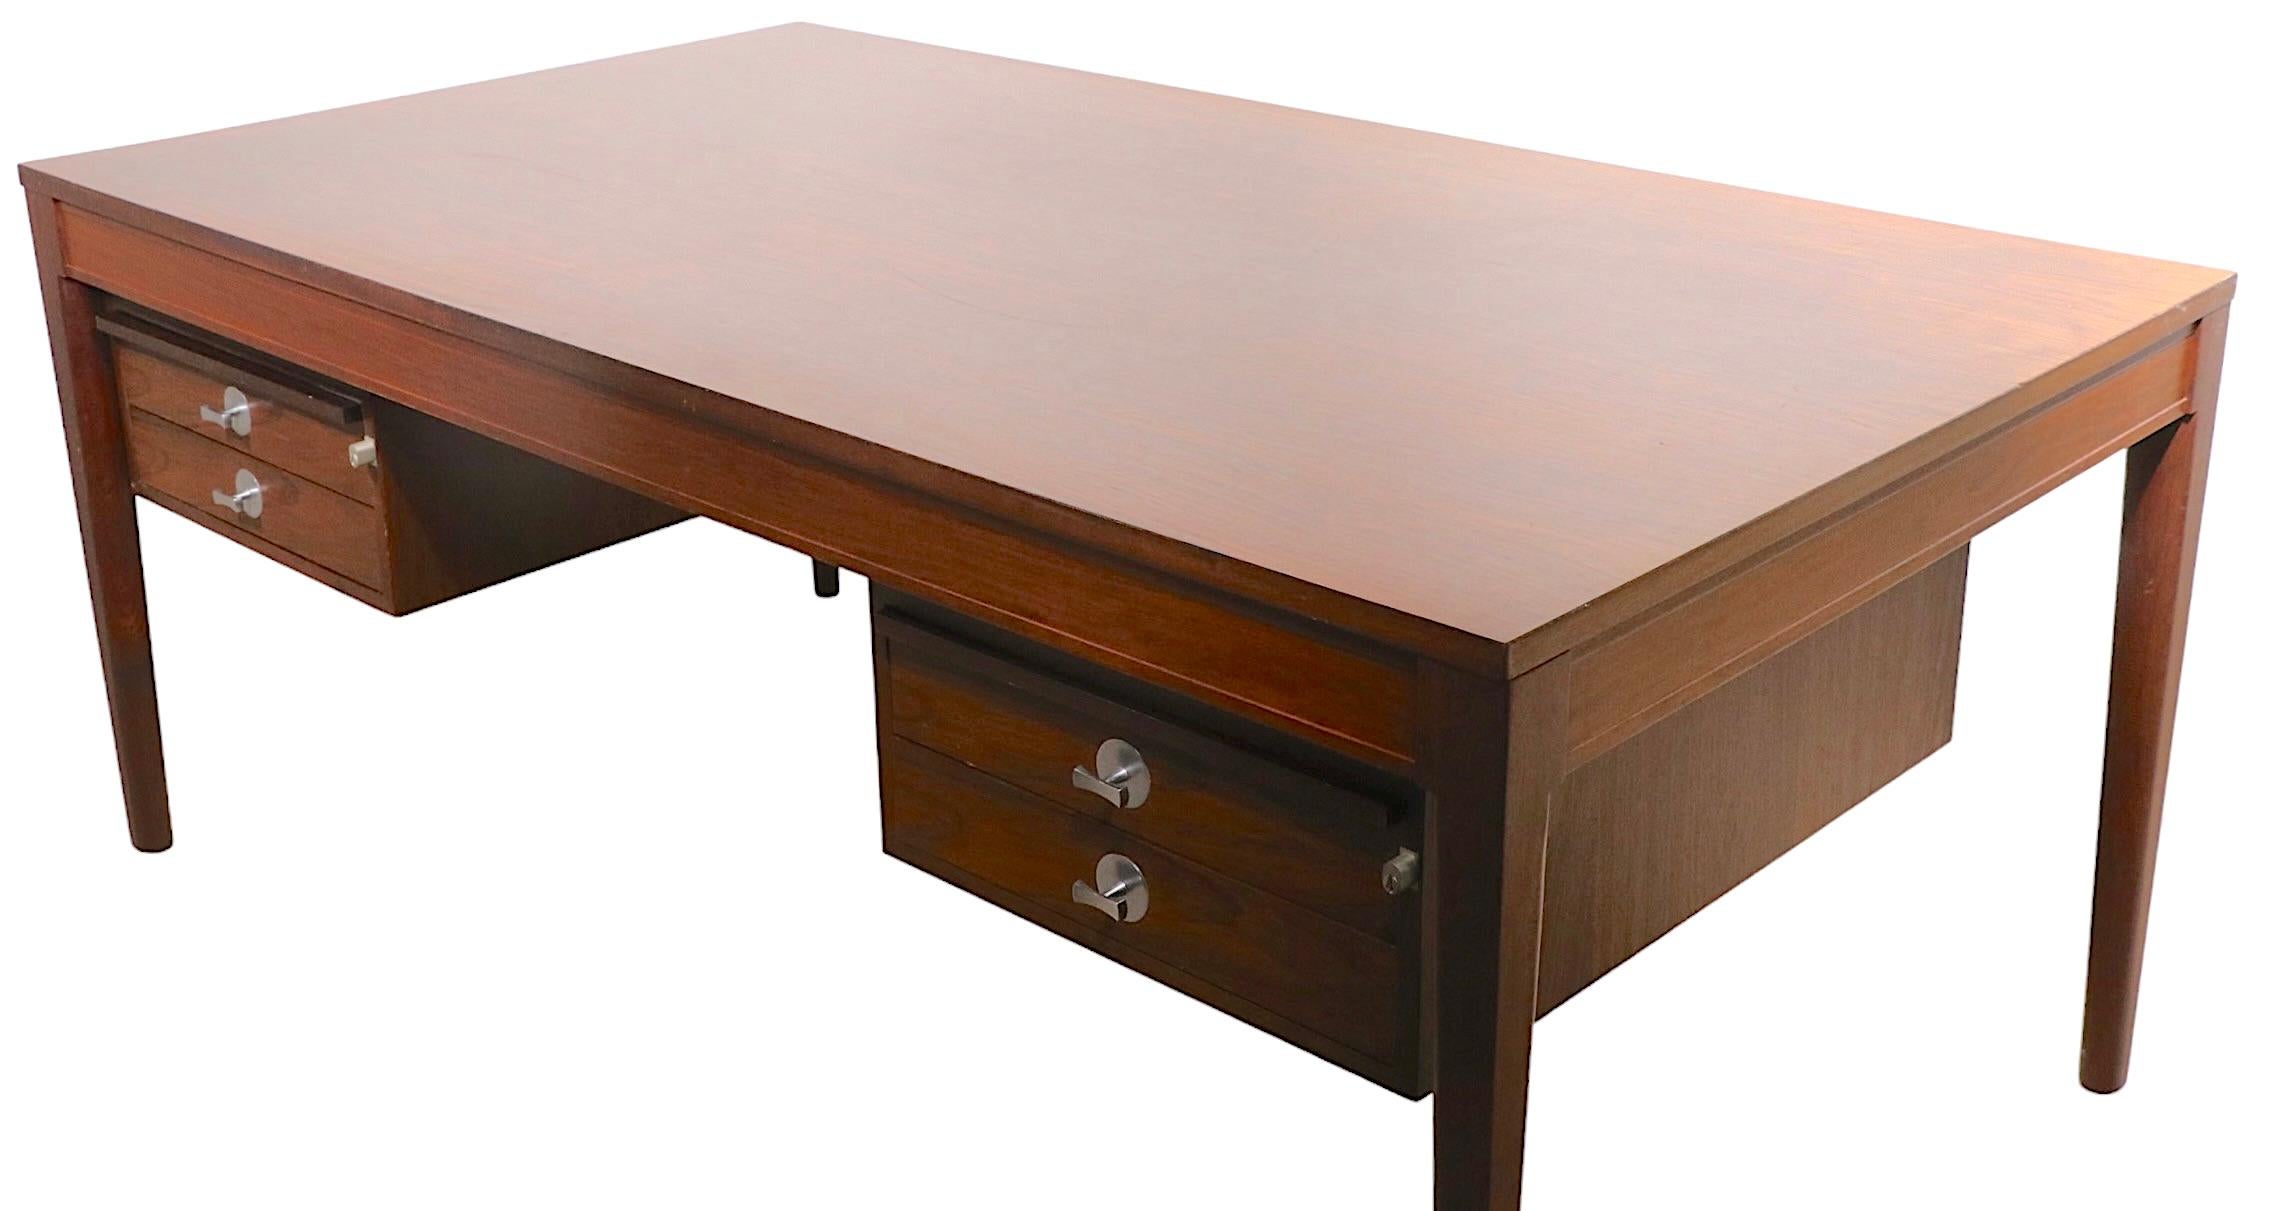 Großer Schreibtisch aus Palisanderholz, Modell Diplomat, Modell FD-951, entworfen von Finn Juhl, hergestellt von France & Son um 1960. Dieser klassische Schreibtisch verfügt über zwei abschließbare Schubladenbänke mit jeweils zwei Schubladen und